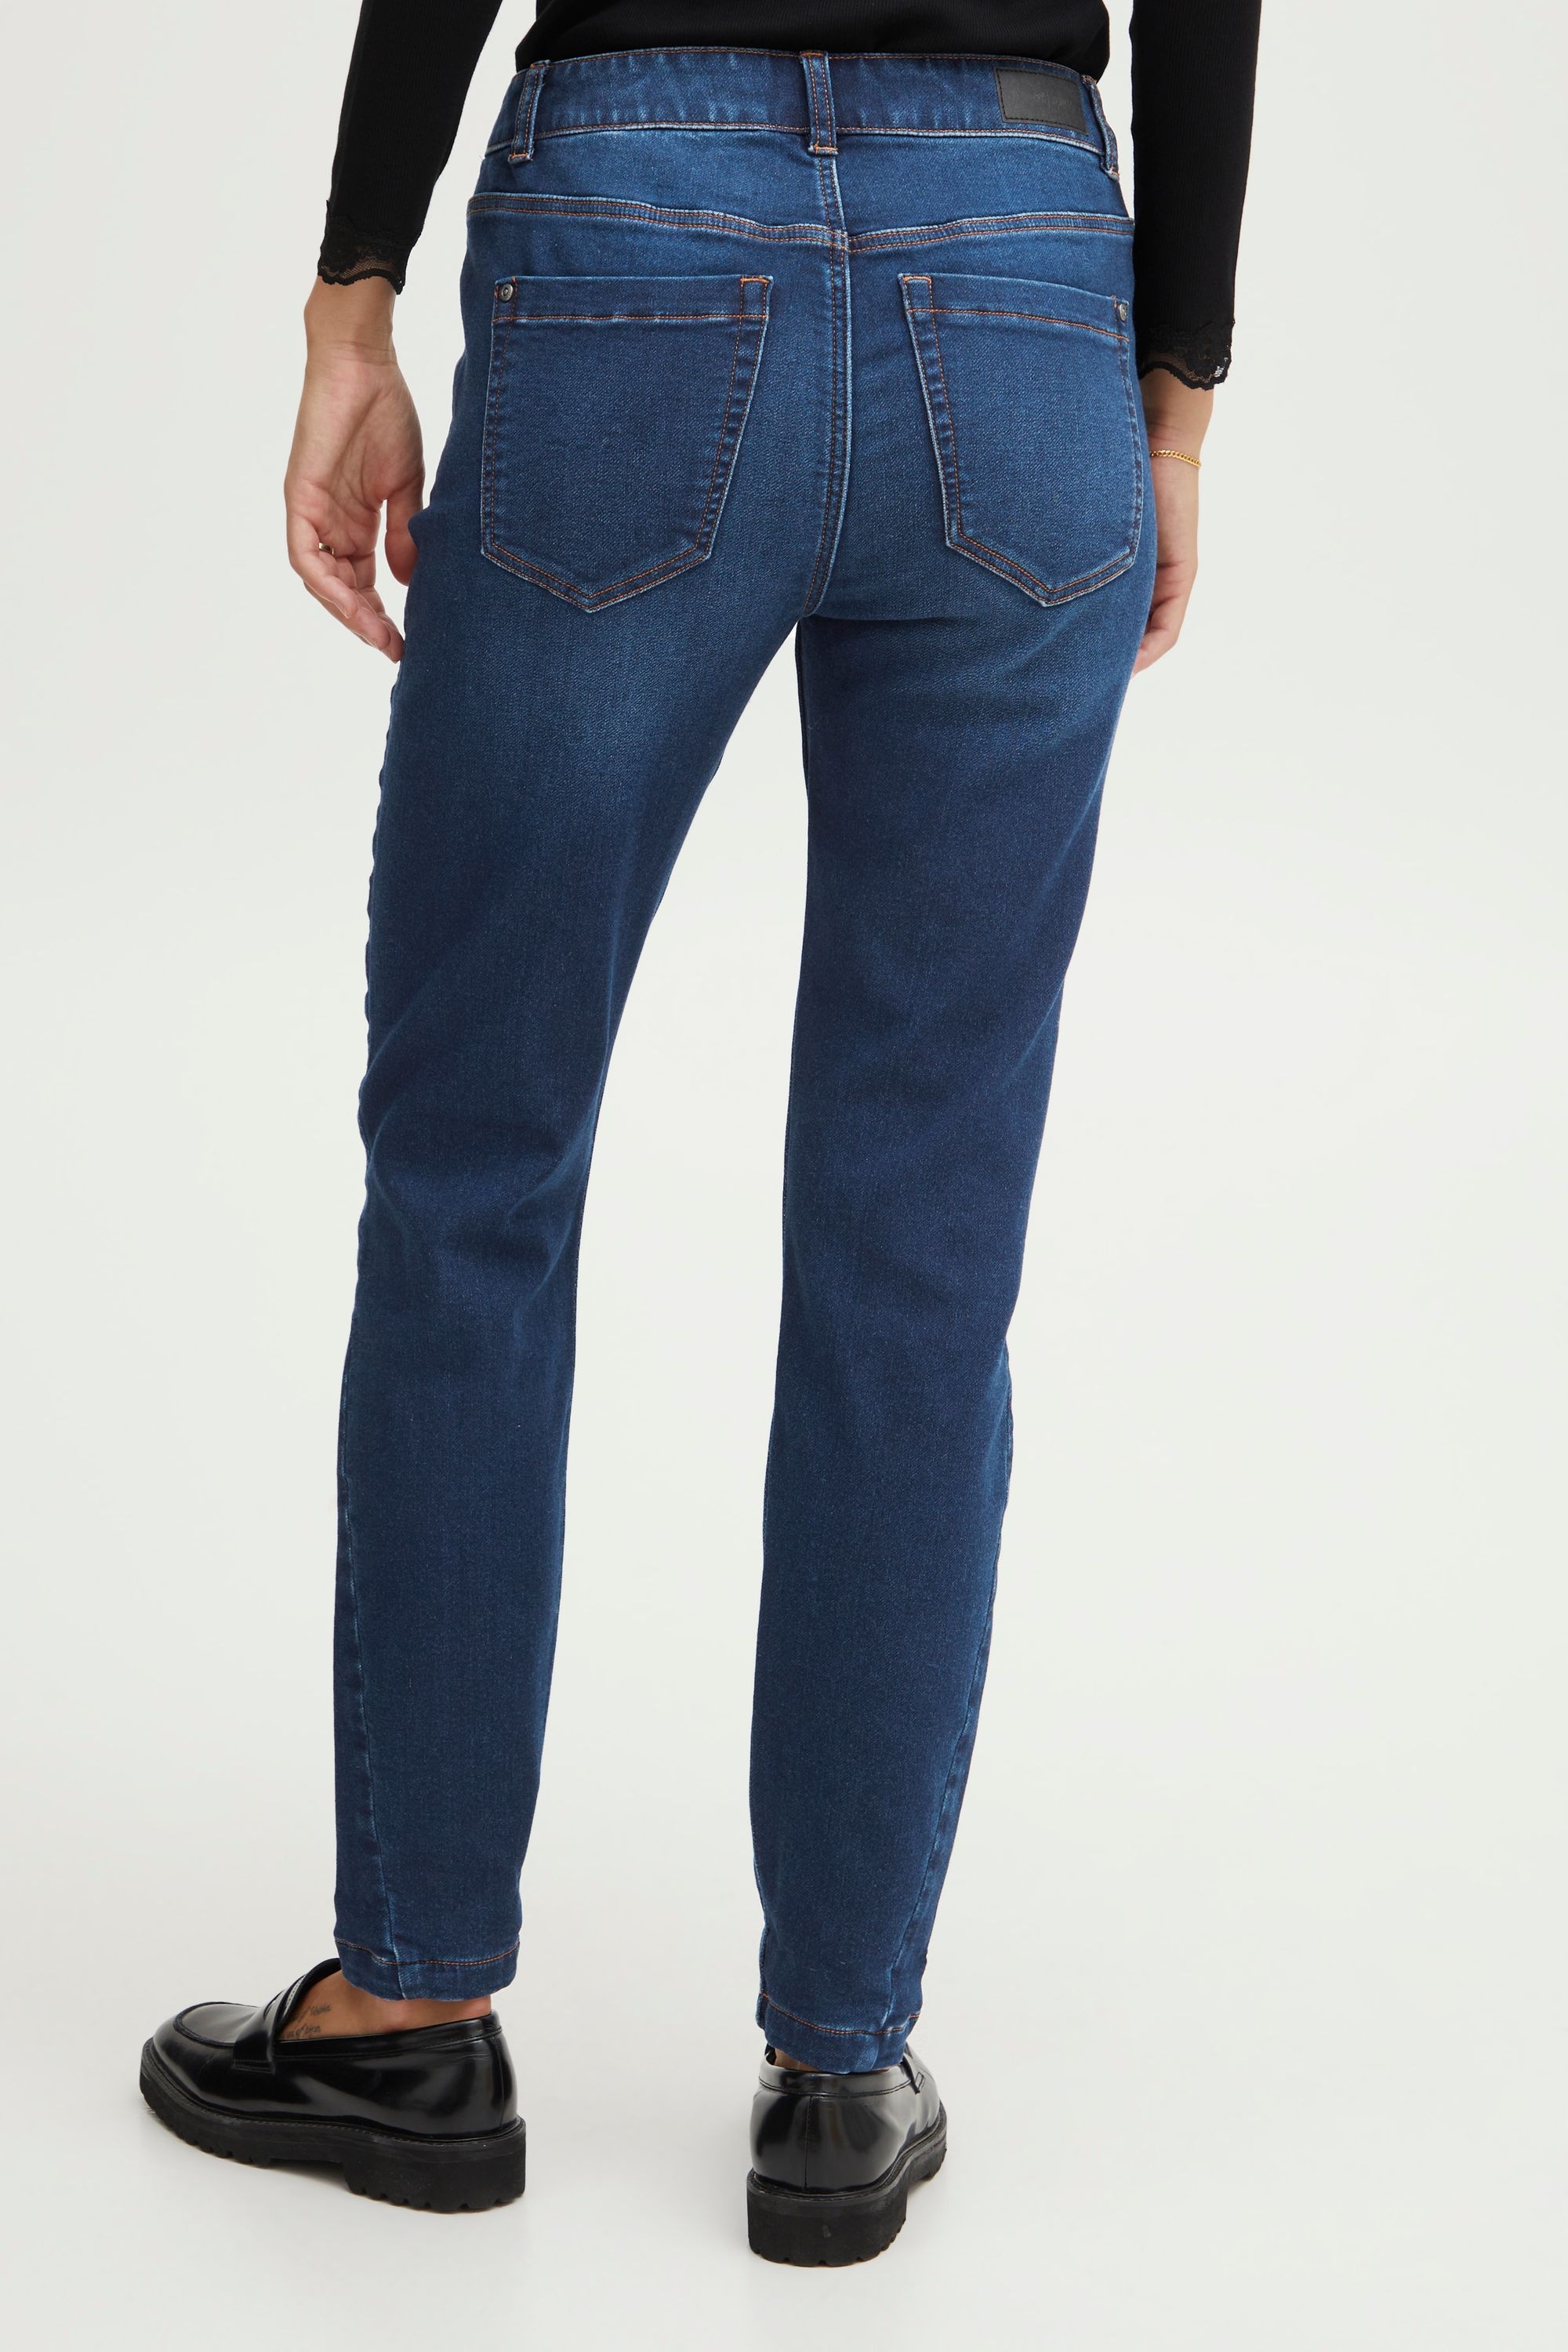 fransa 5-Pocket-Jeans »Fransa Frvilja Je 1 Fl«